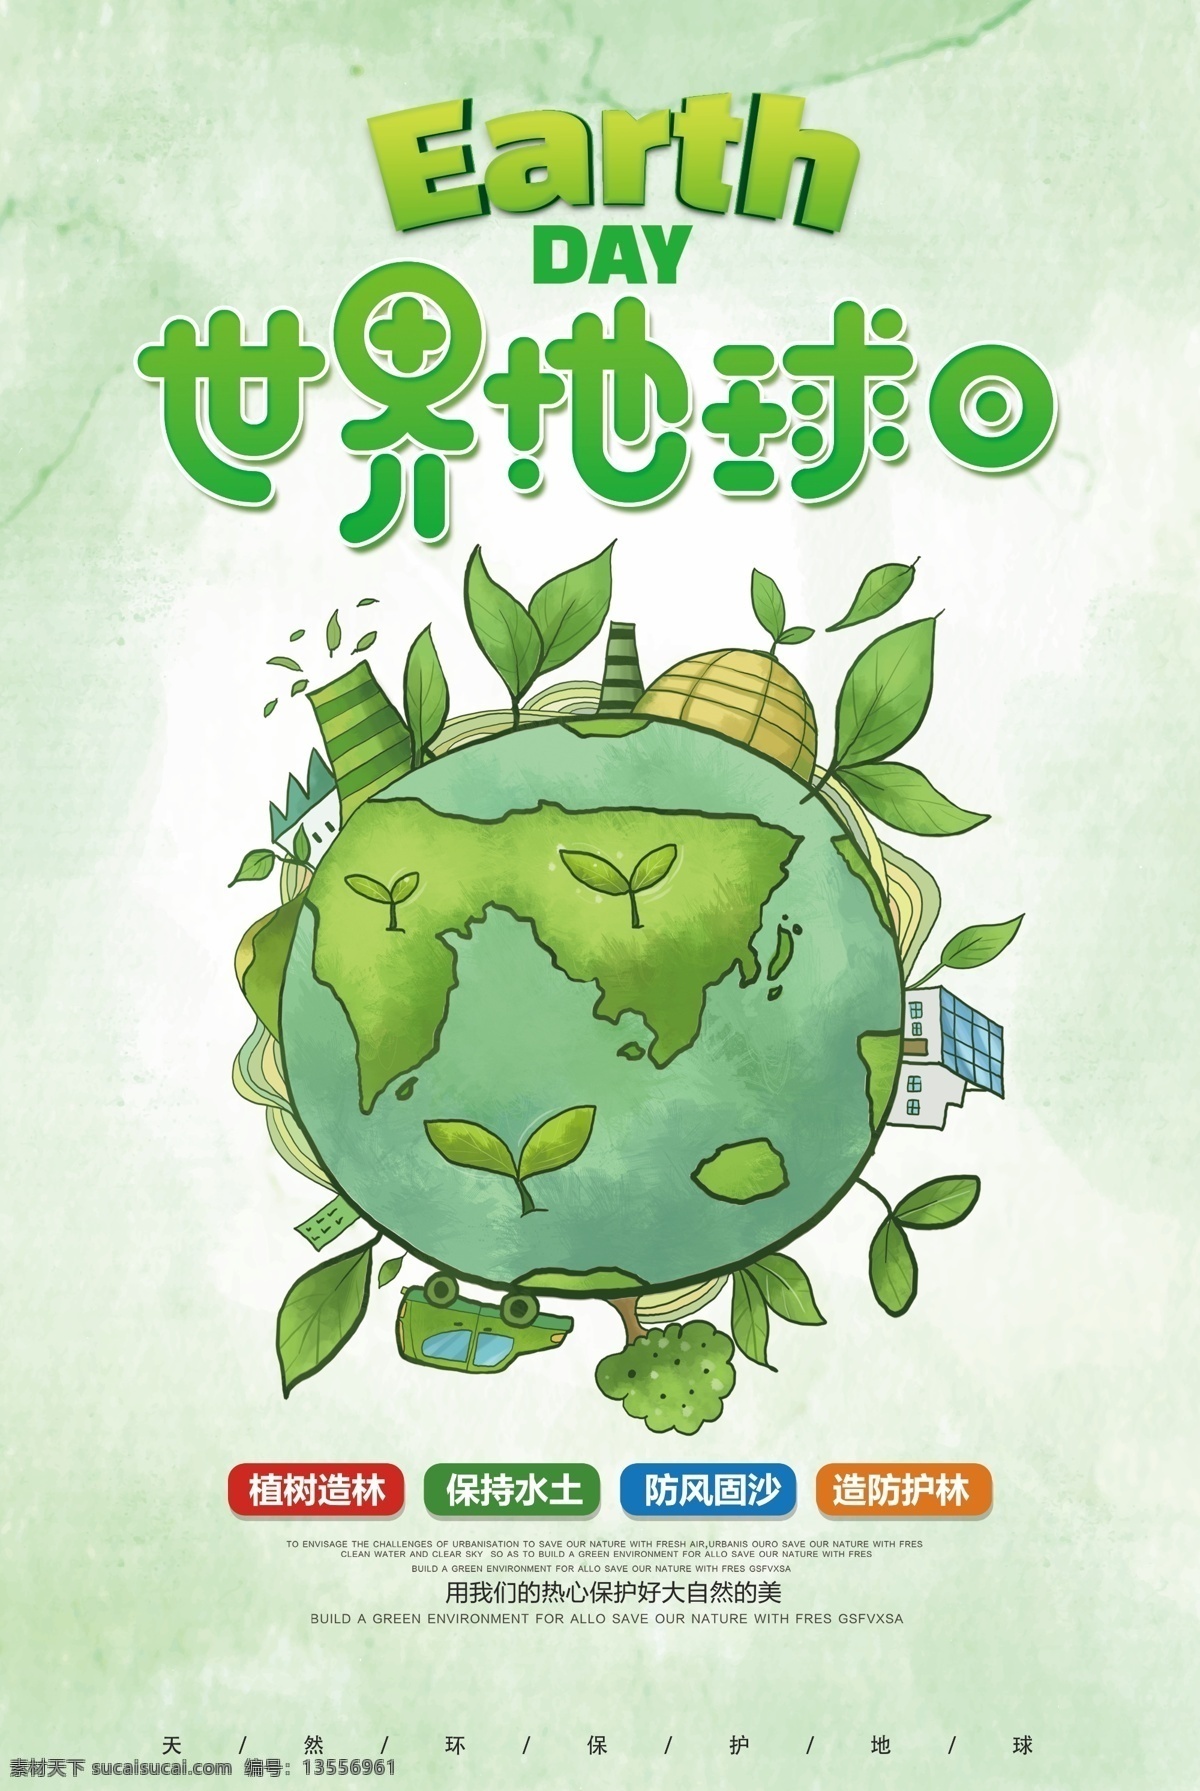 绿色 简约 世界 地球日 公益 海报 公益海报 环保 节约用水 免费海报 纯色 保护环境 植树造林 保护地球 植树节 节能 低碳 地球 环保日 保护环境海报 世界地球日 绿色世界